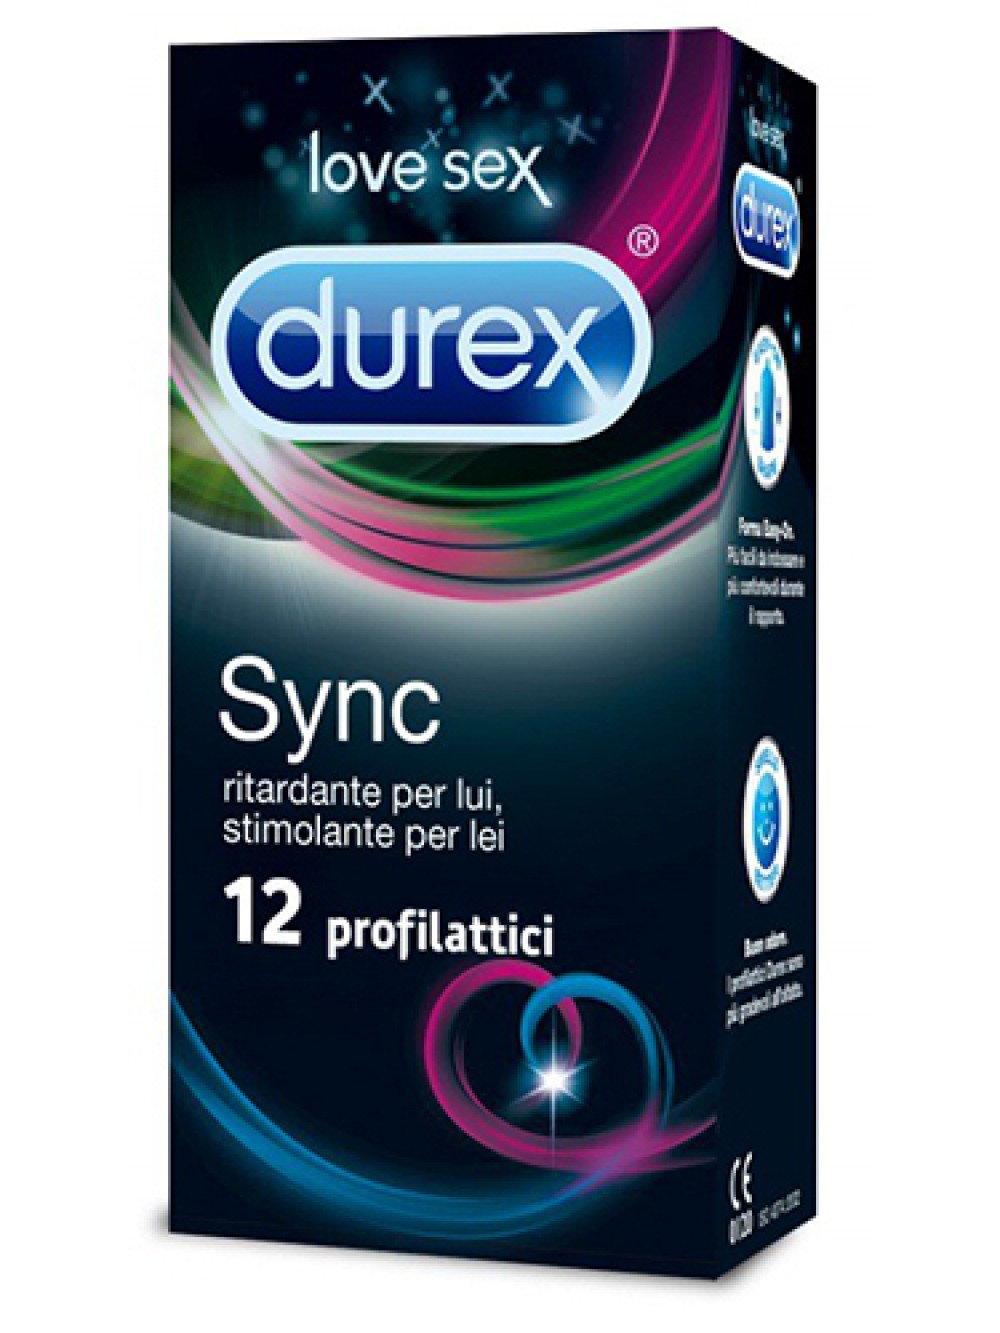 Durex Sync 12 preservati 5052197044850